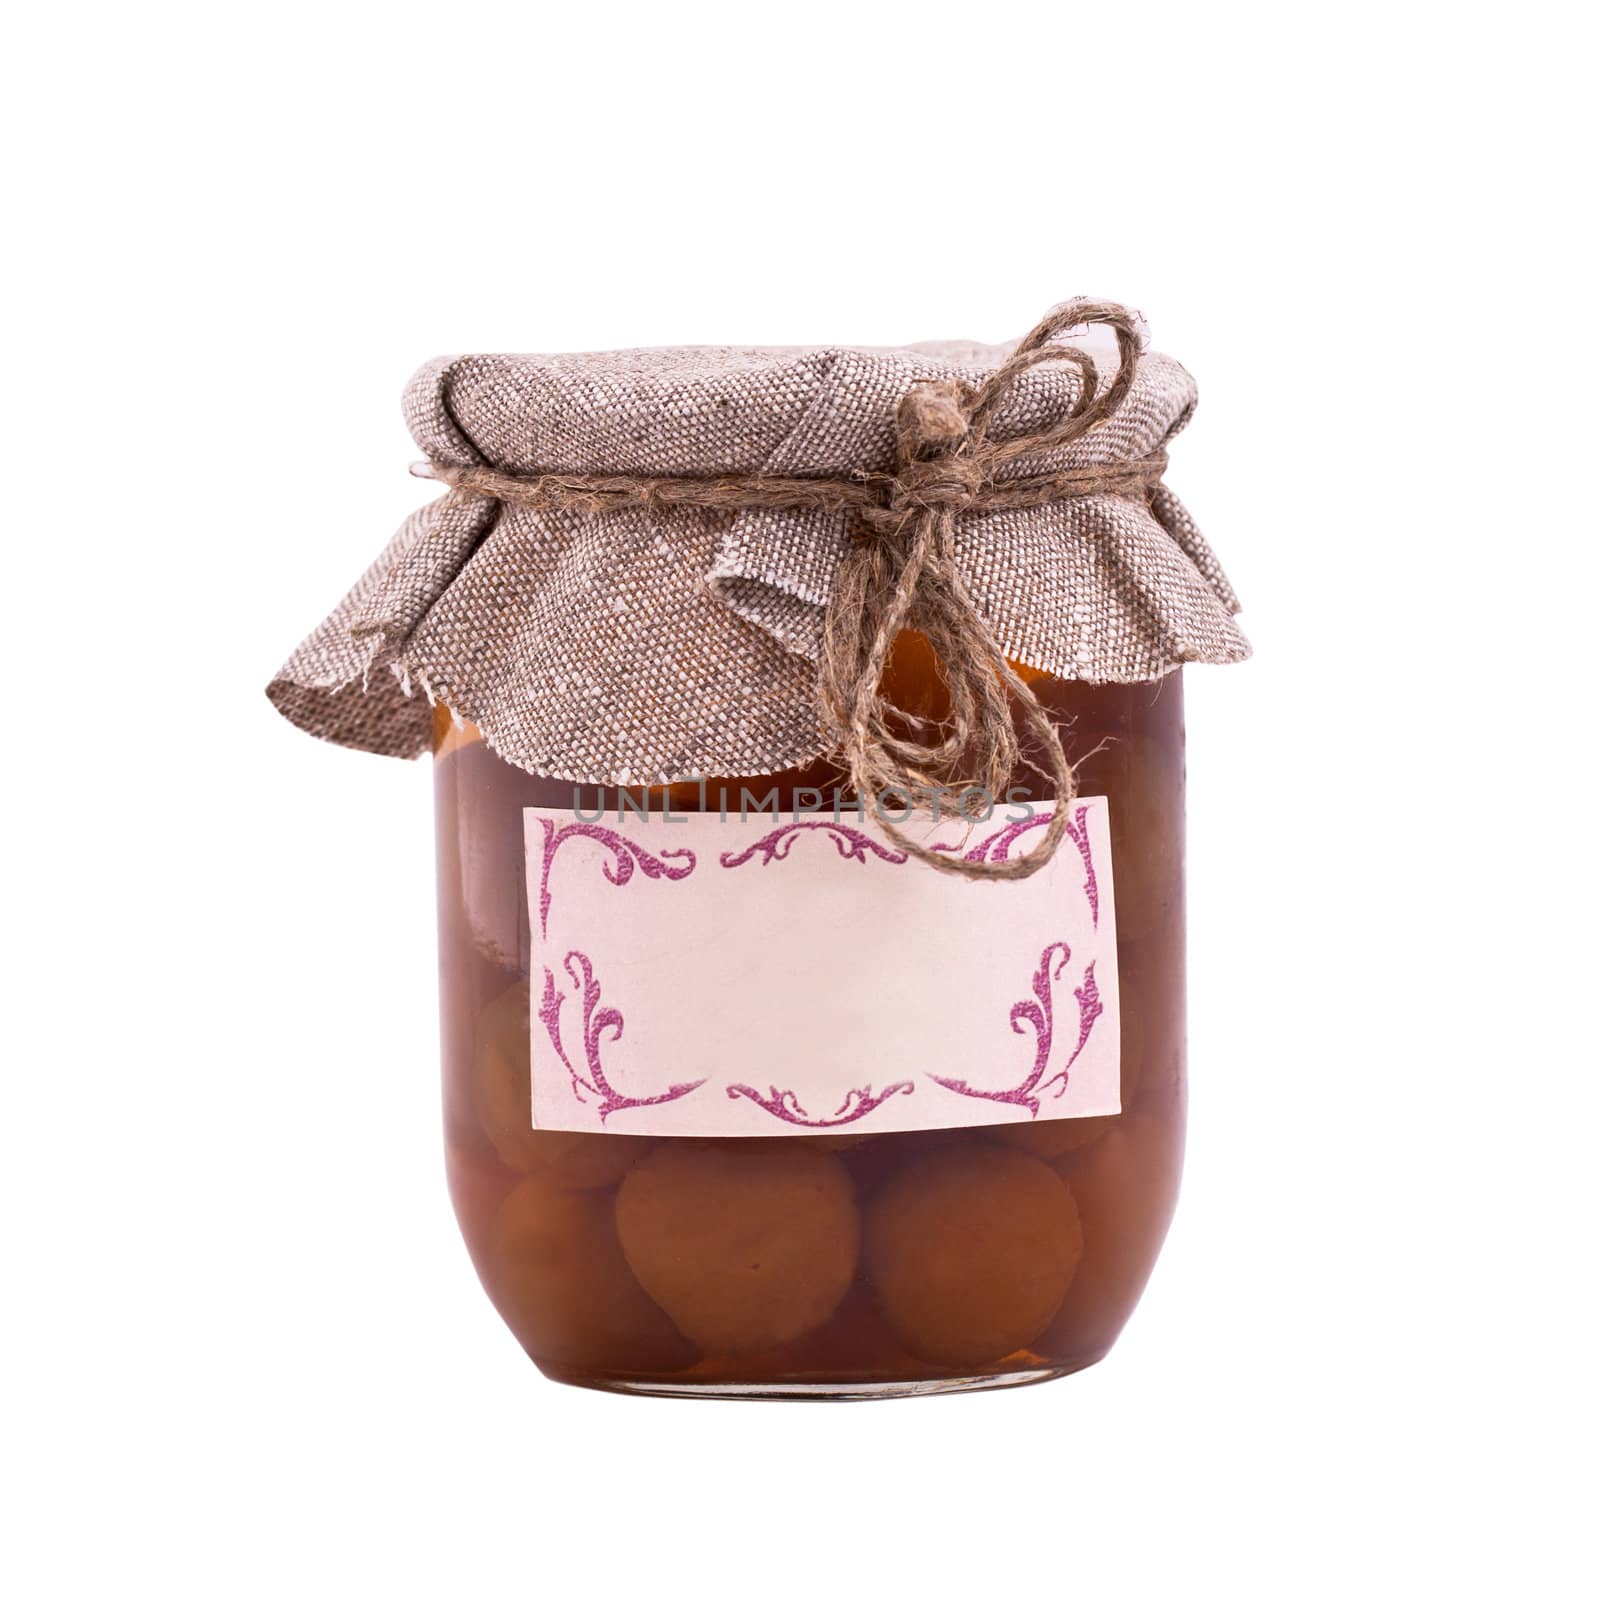 fruit plum jam in a glass jar by gsdonlin